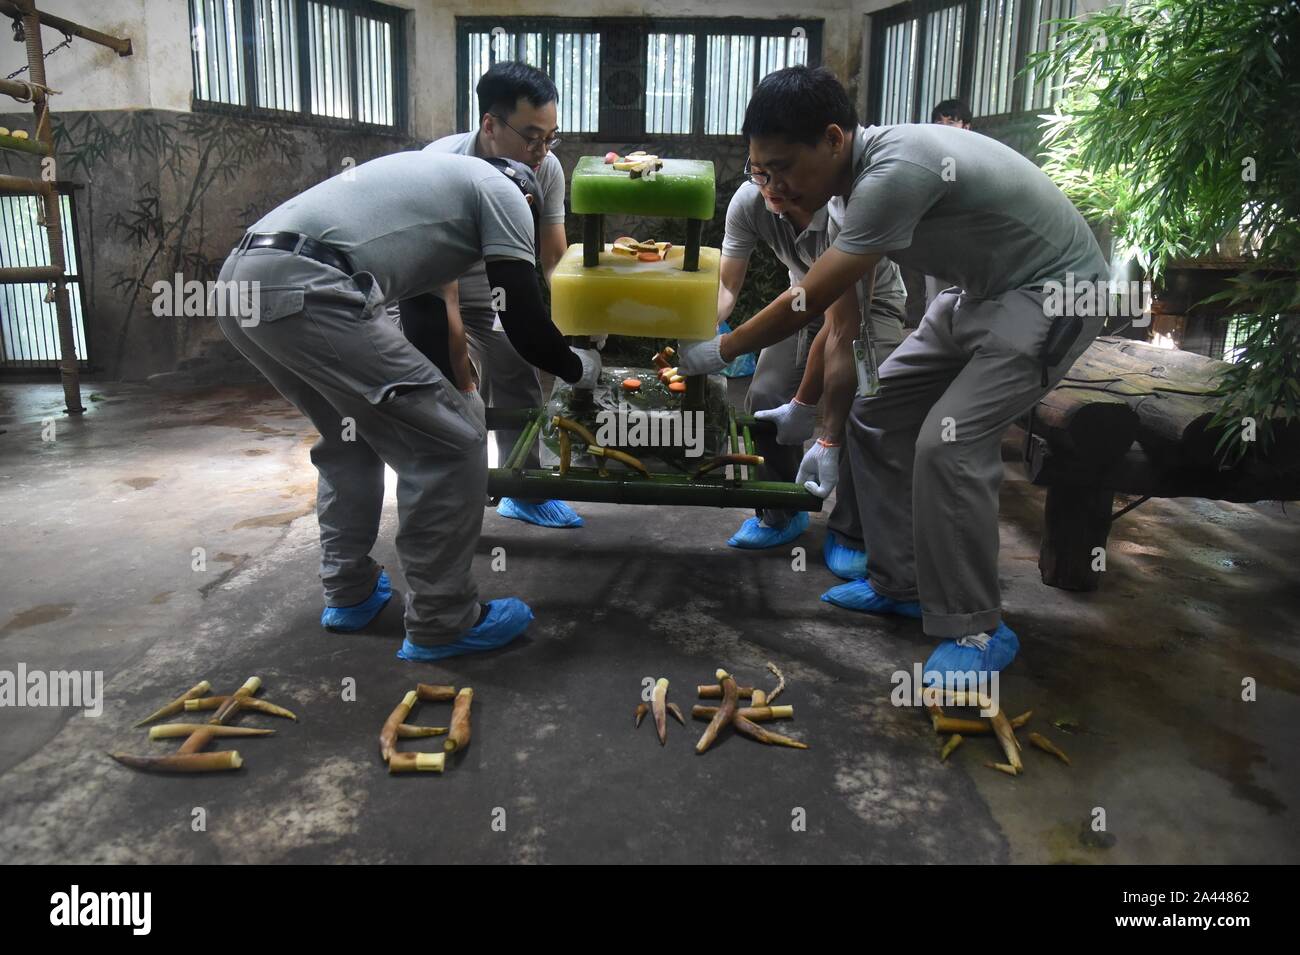 Zoo chinois préparation de pousses de bambou et de glace gâteaux pour grand panda frères Chengjiu et Shuanghao au cours d'une célébration pour leurs cinq ans birt Banque D'Images